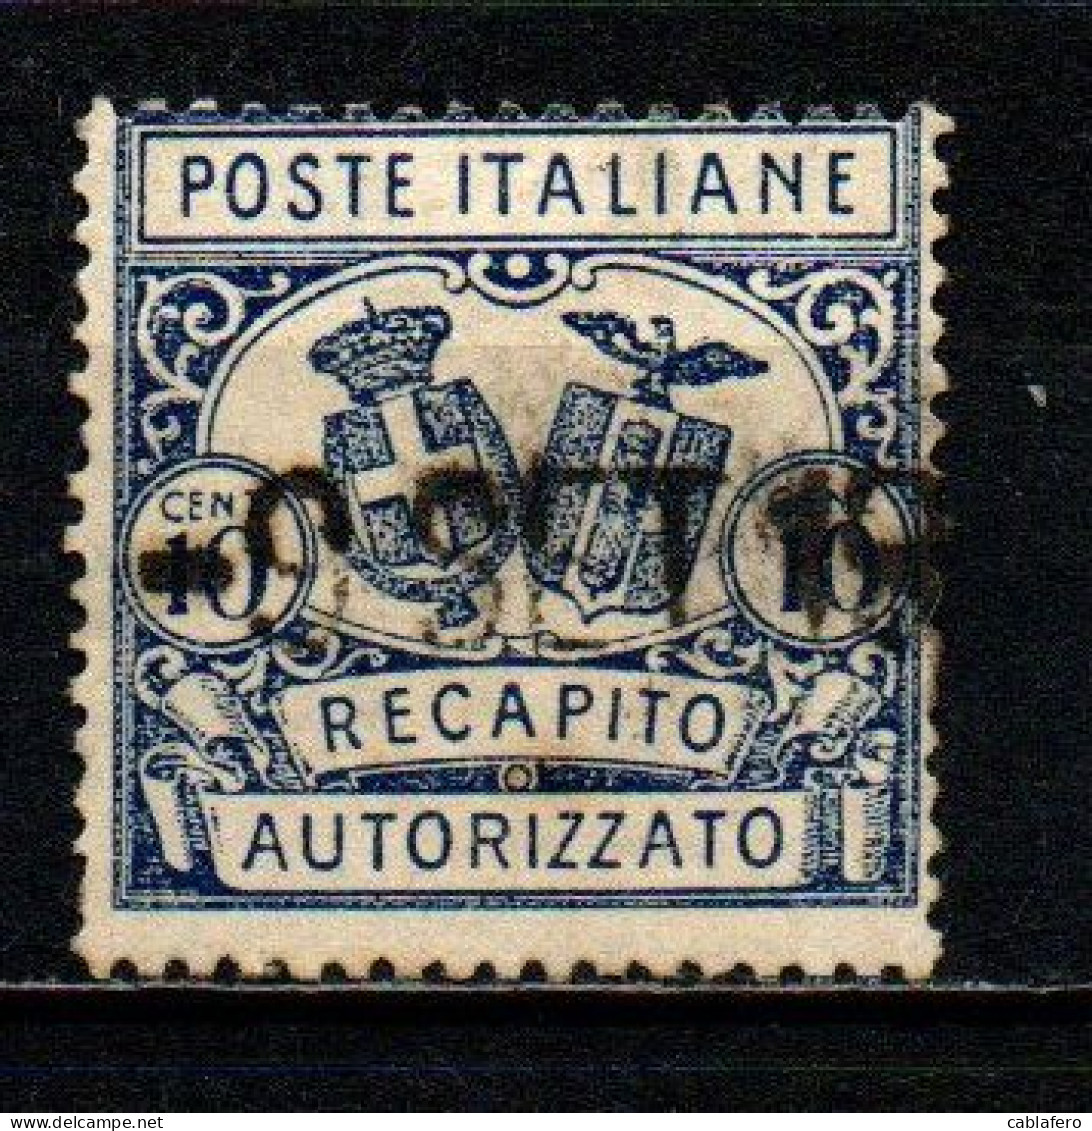 ITALIA REGNO - 1928 - RECAPITO AUTORIZZATO - STEMMI IN OVALE - DENTELLATURA 14 -  USATO - Rohrpost